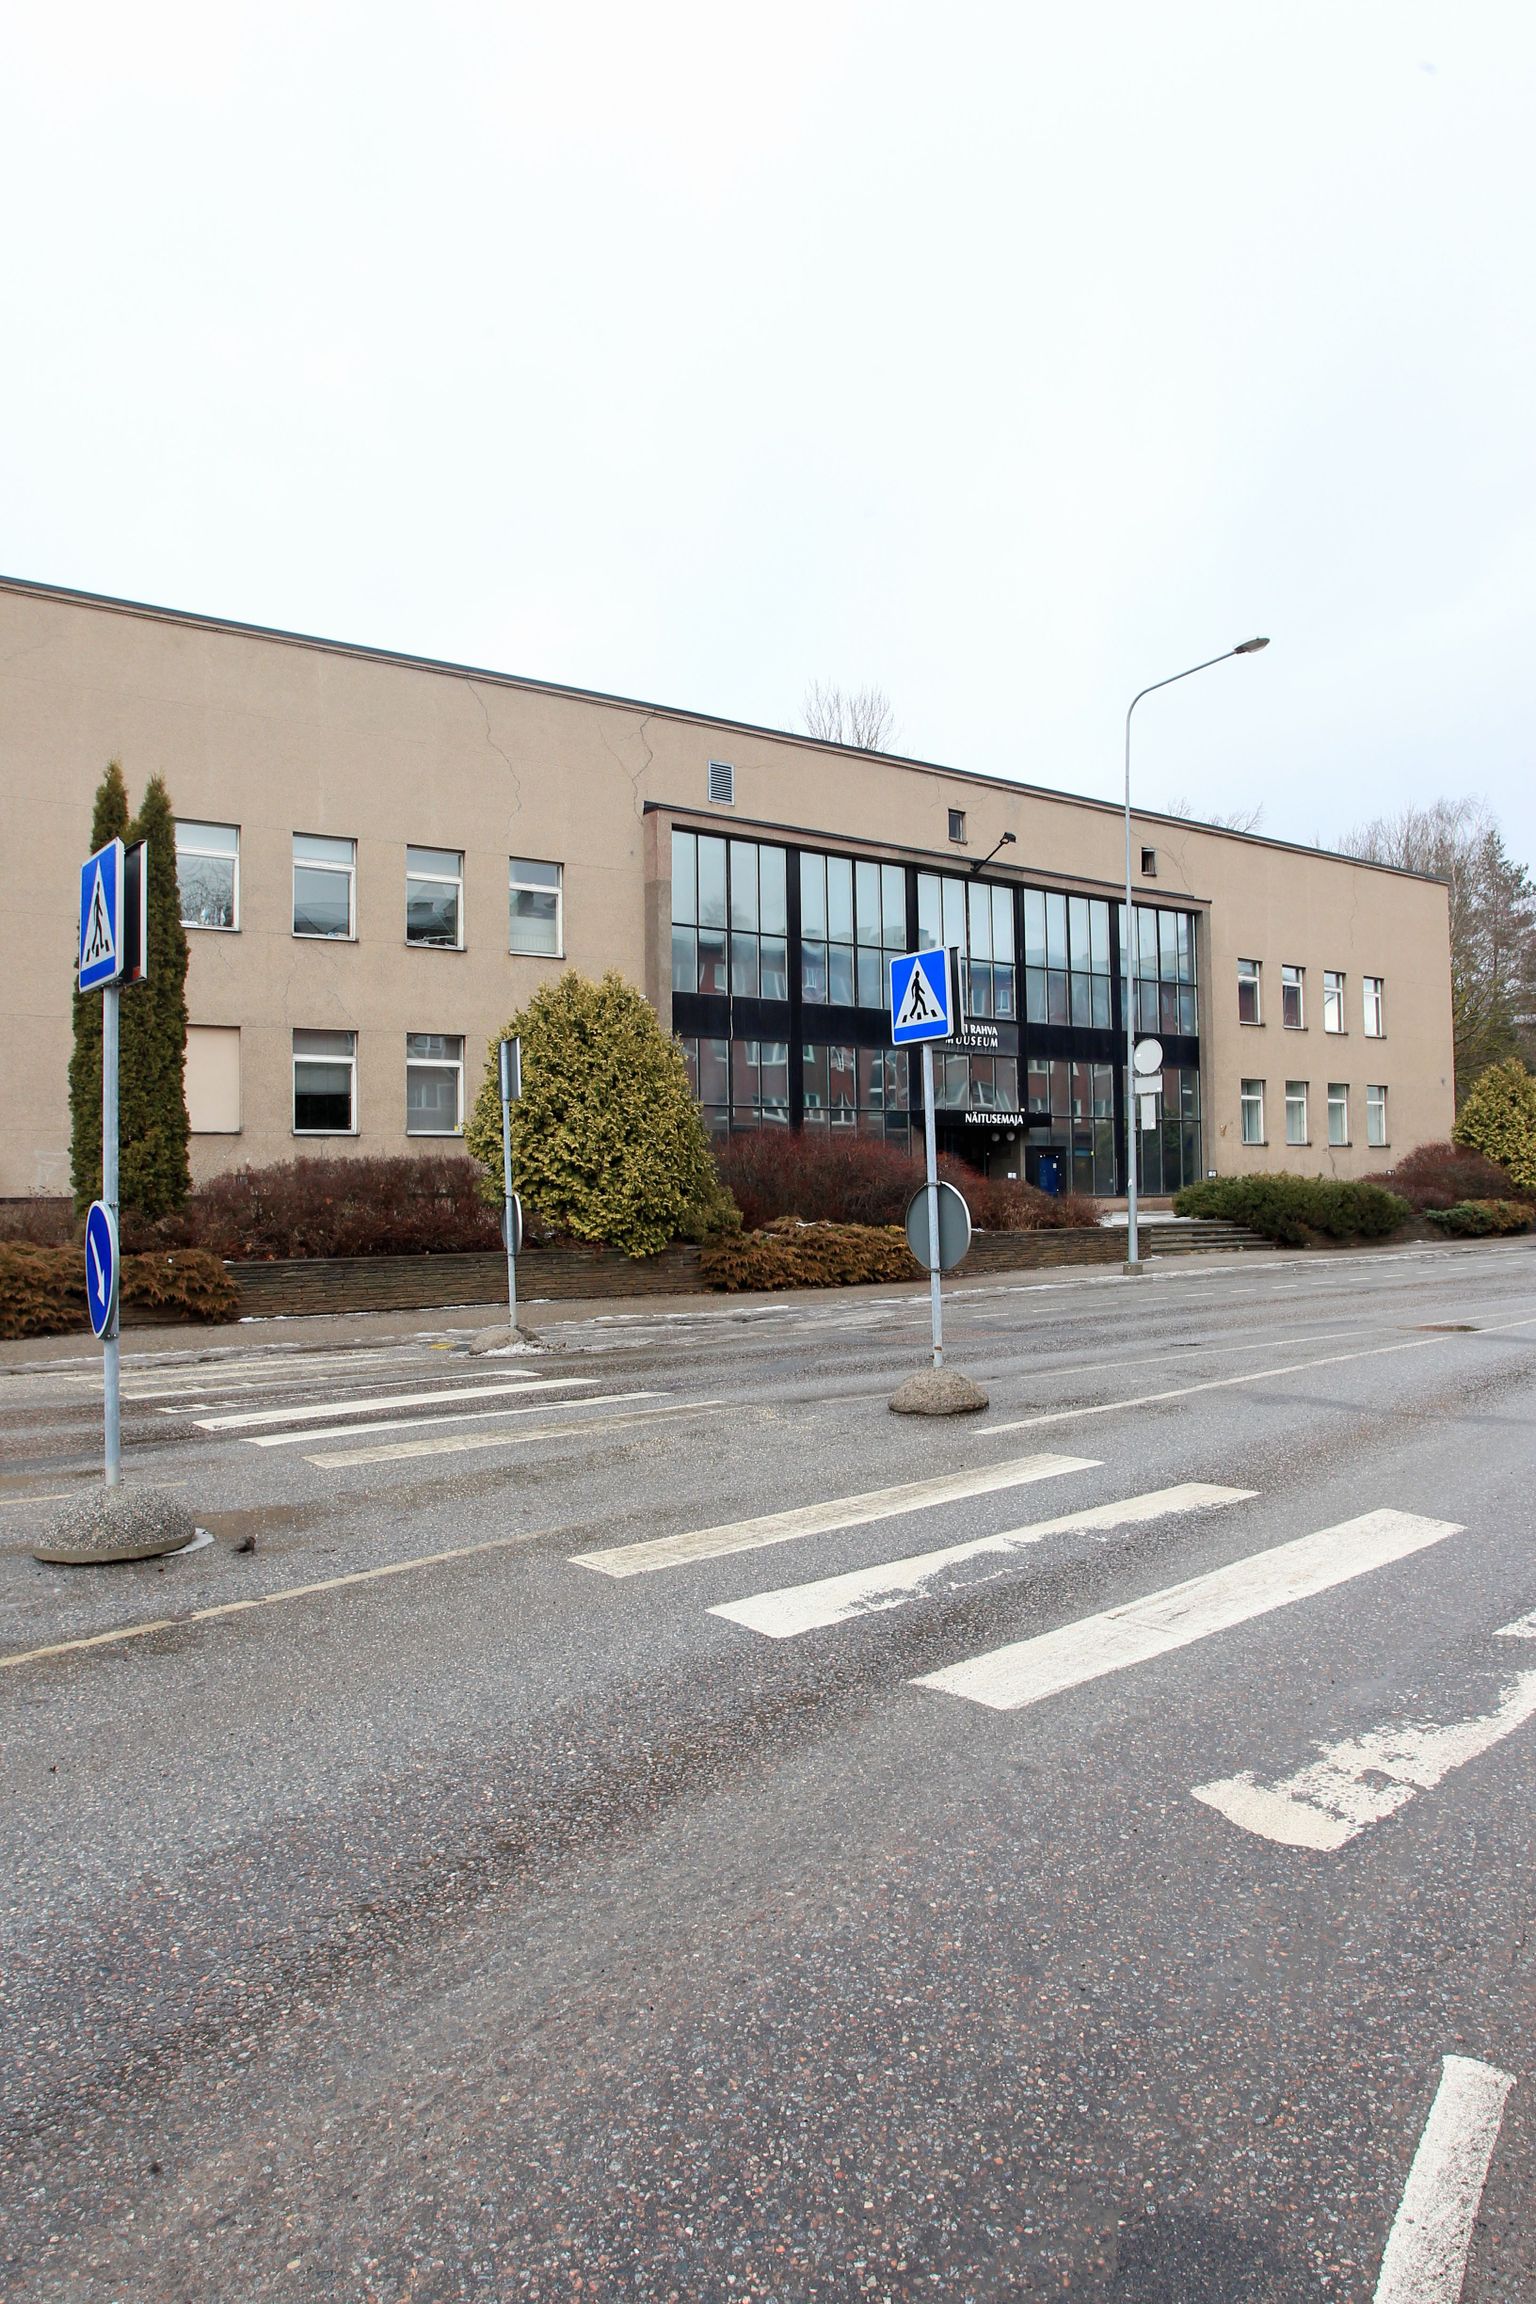 Kuperjanovi 9 kinnistul 1963. aastal valminud kahekorruseline hoone on olnud raudteelaste klubi ja Eesti Rahva Muuseumi näitusemaja. Hoone oksjonile panek lõi sassi Tartu linnavalitsuse plaanid teha sinna seltsimaja.